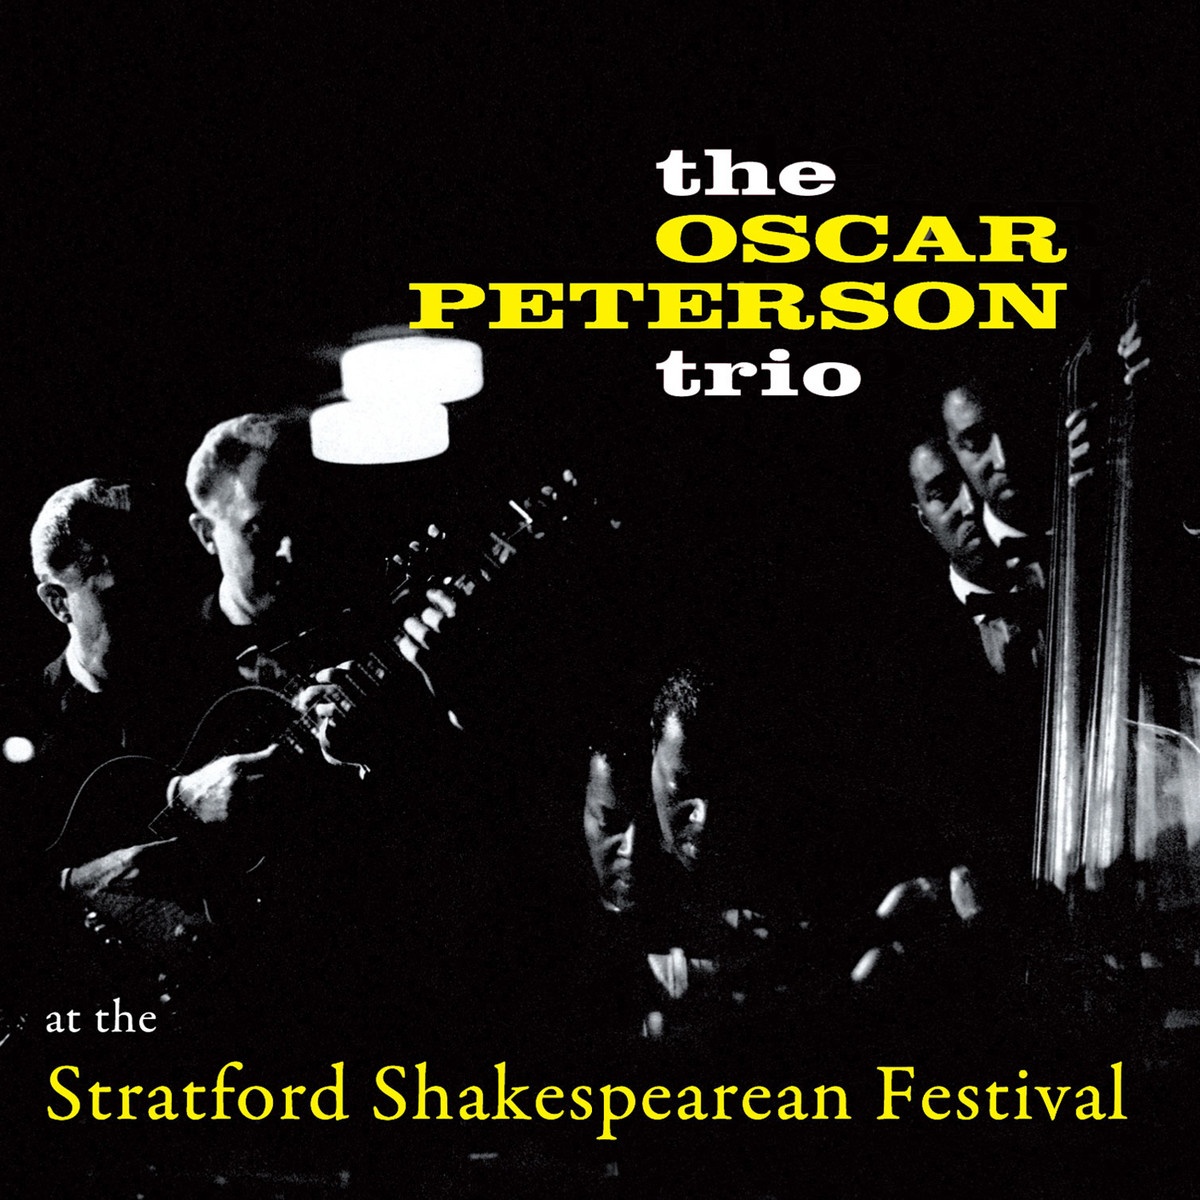 At the Stratford Shakespearean Festival